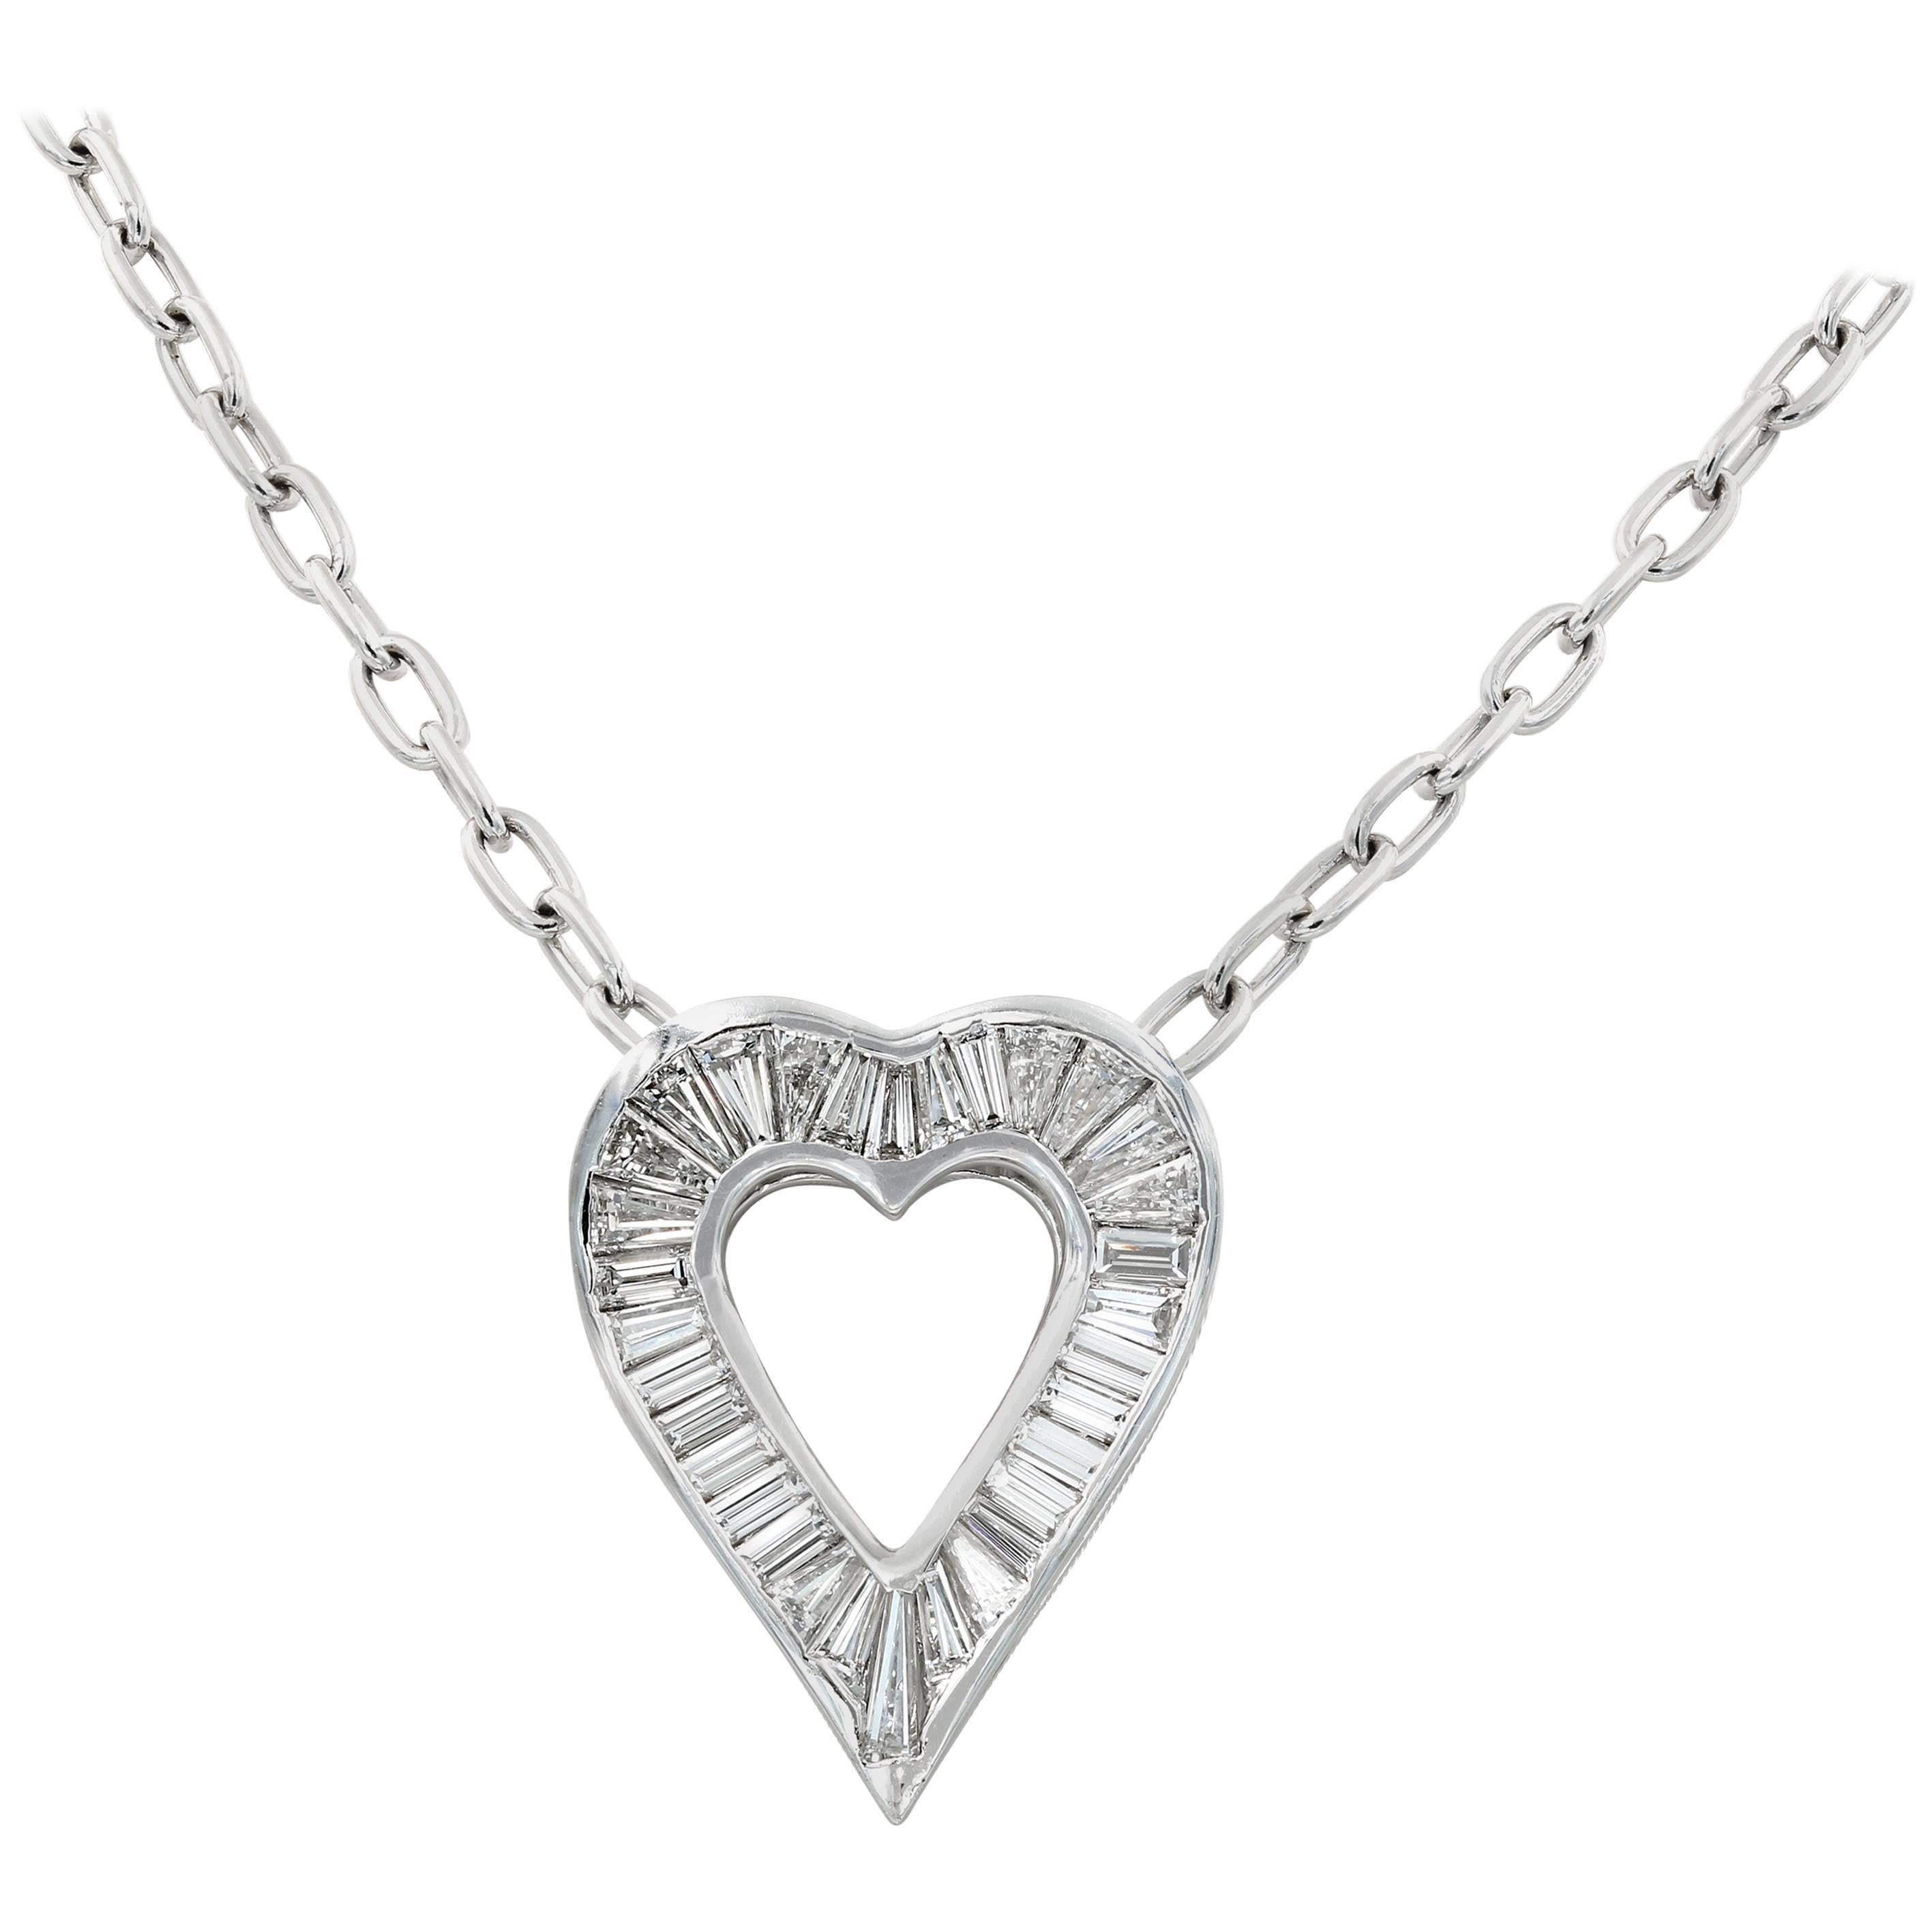 Lester Lampert Signature Large Baguette Diamond Heart Necklace